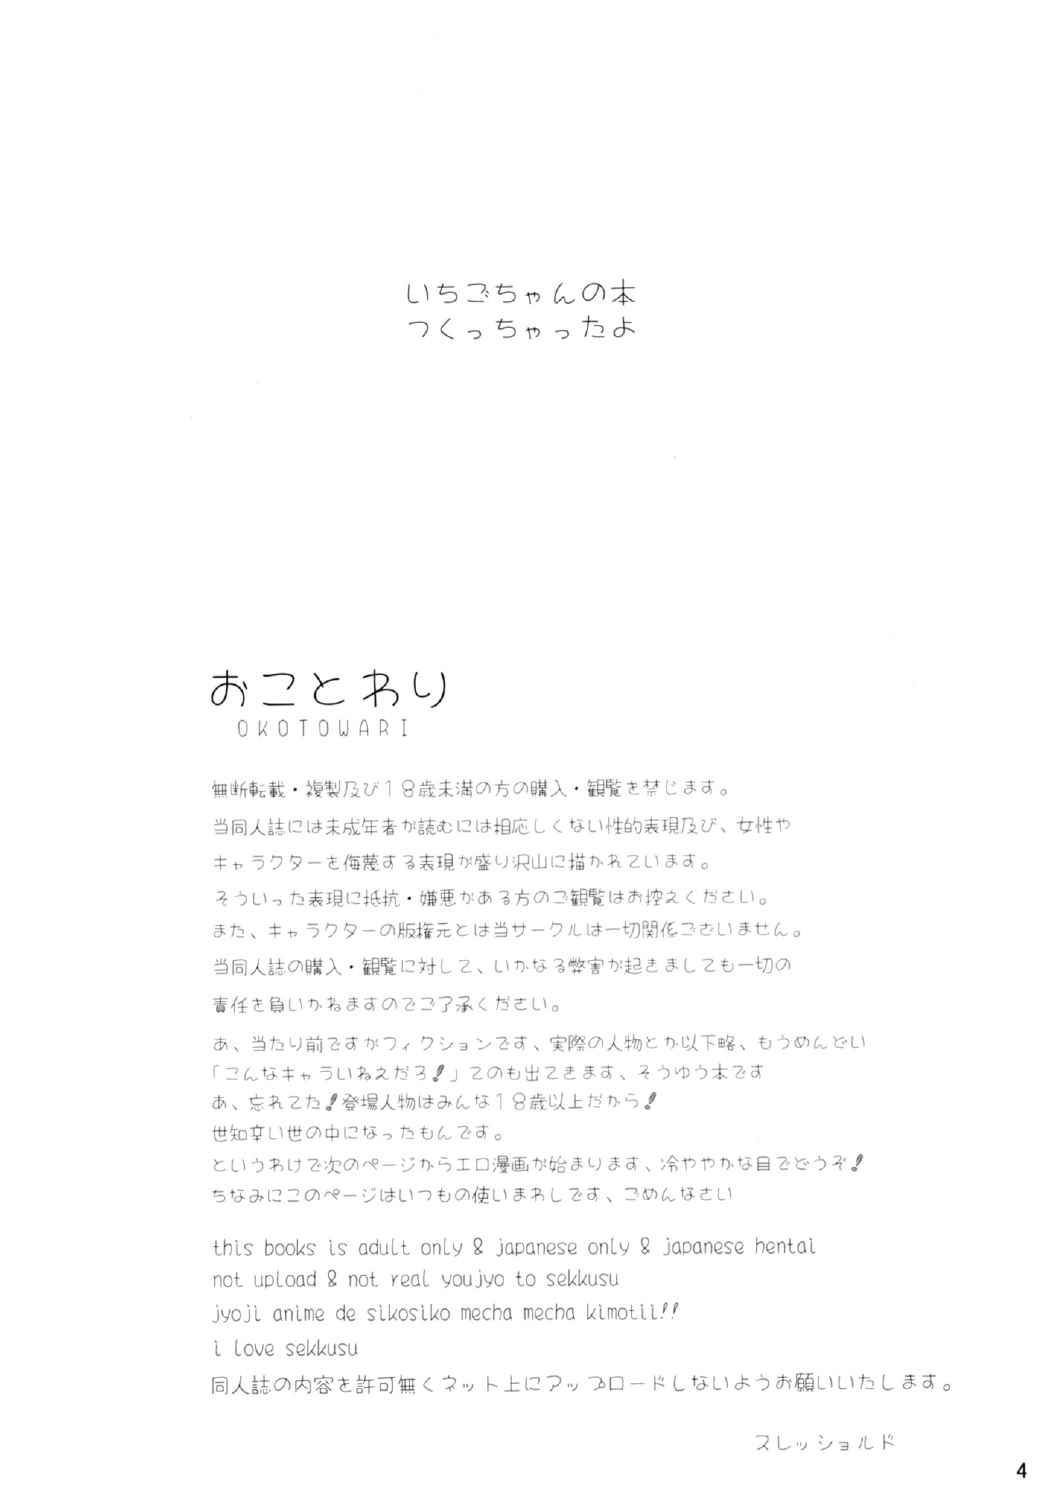 Ichigo-Verse 2